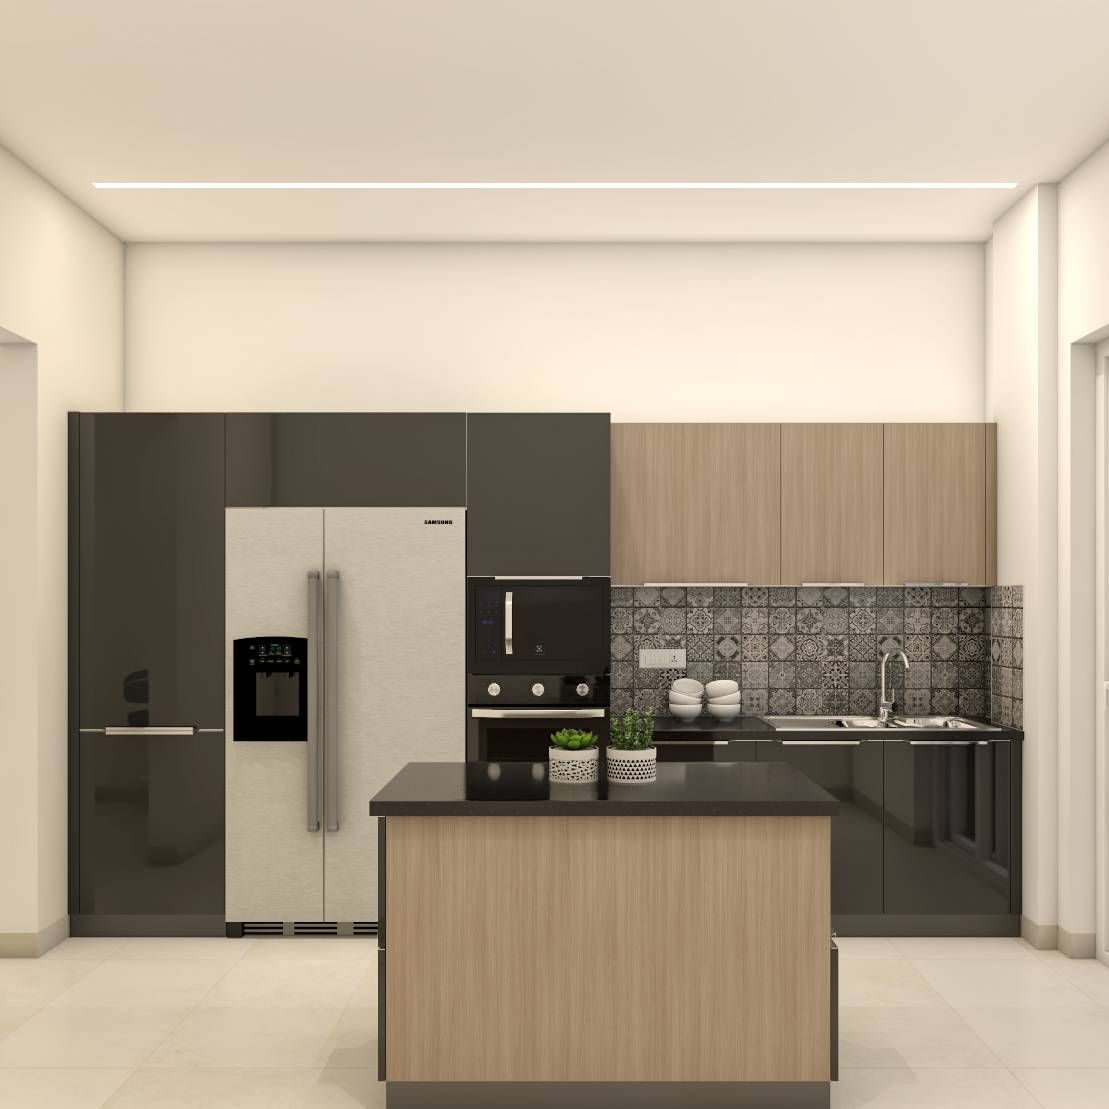 Modern Modular Kitchen Design With Kitchen Island